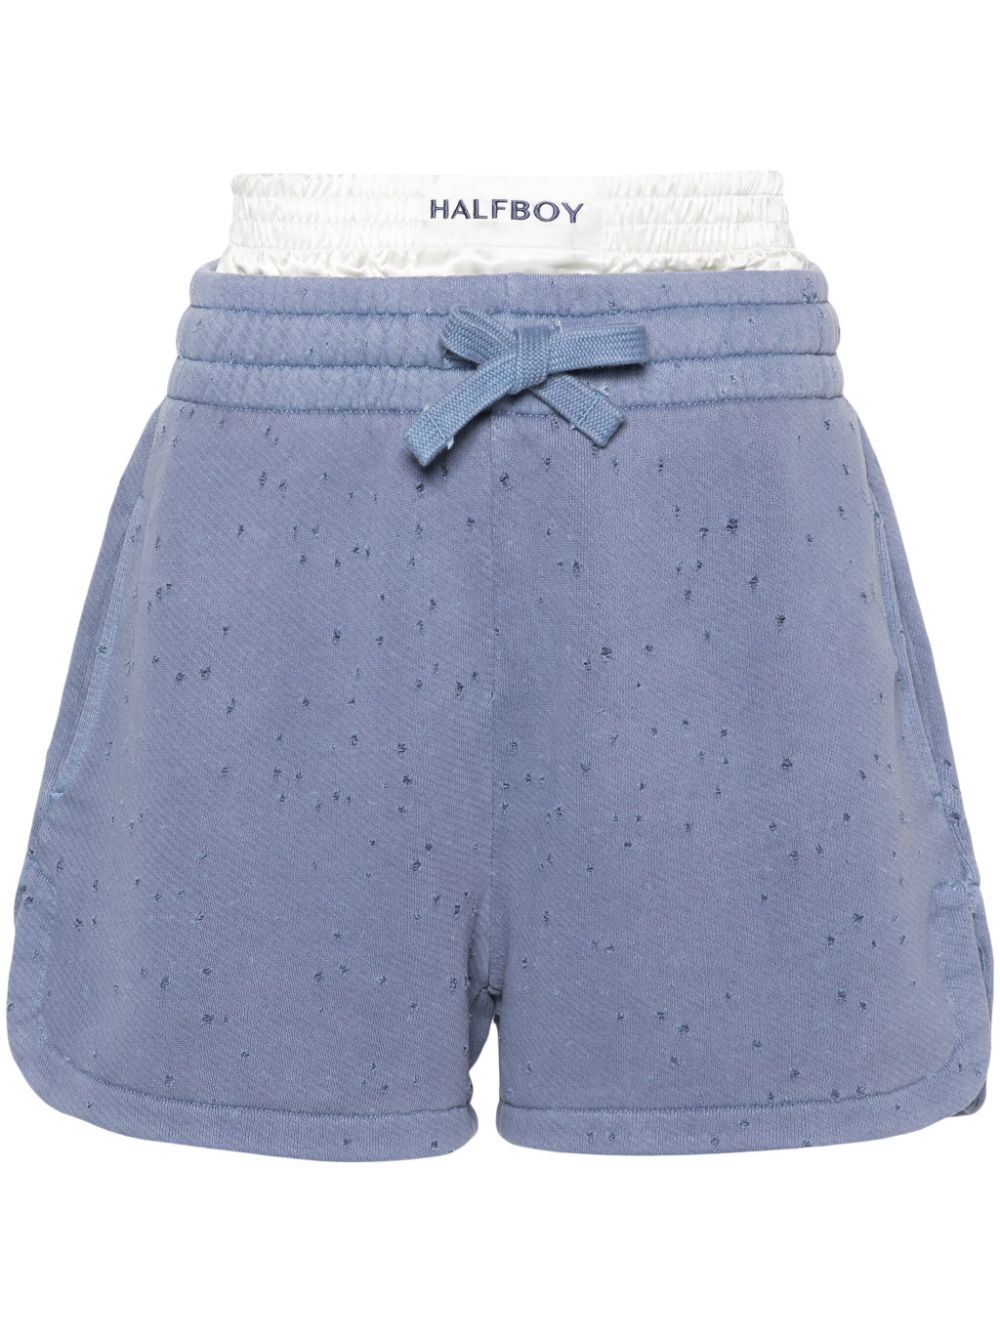 Halfboy layered distressed cotton shorts - Blue von Halfboy